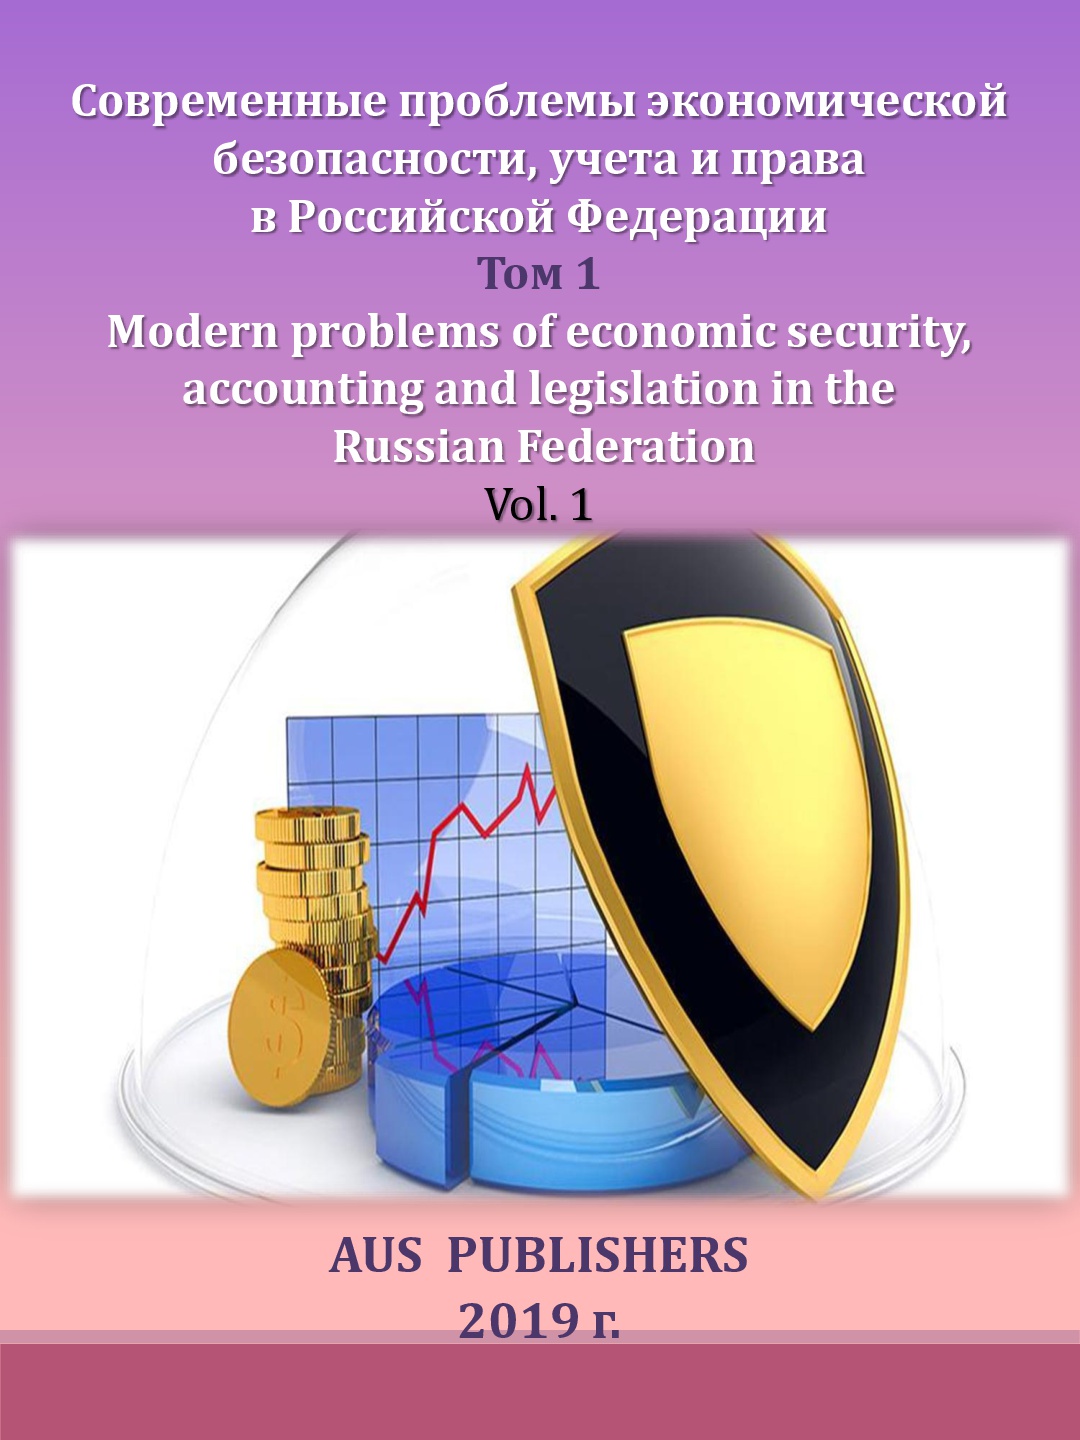             Современные проблемы экономической безопасности, учета и права в Российской Федерации. Том 1
    